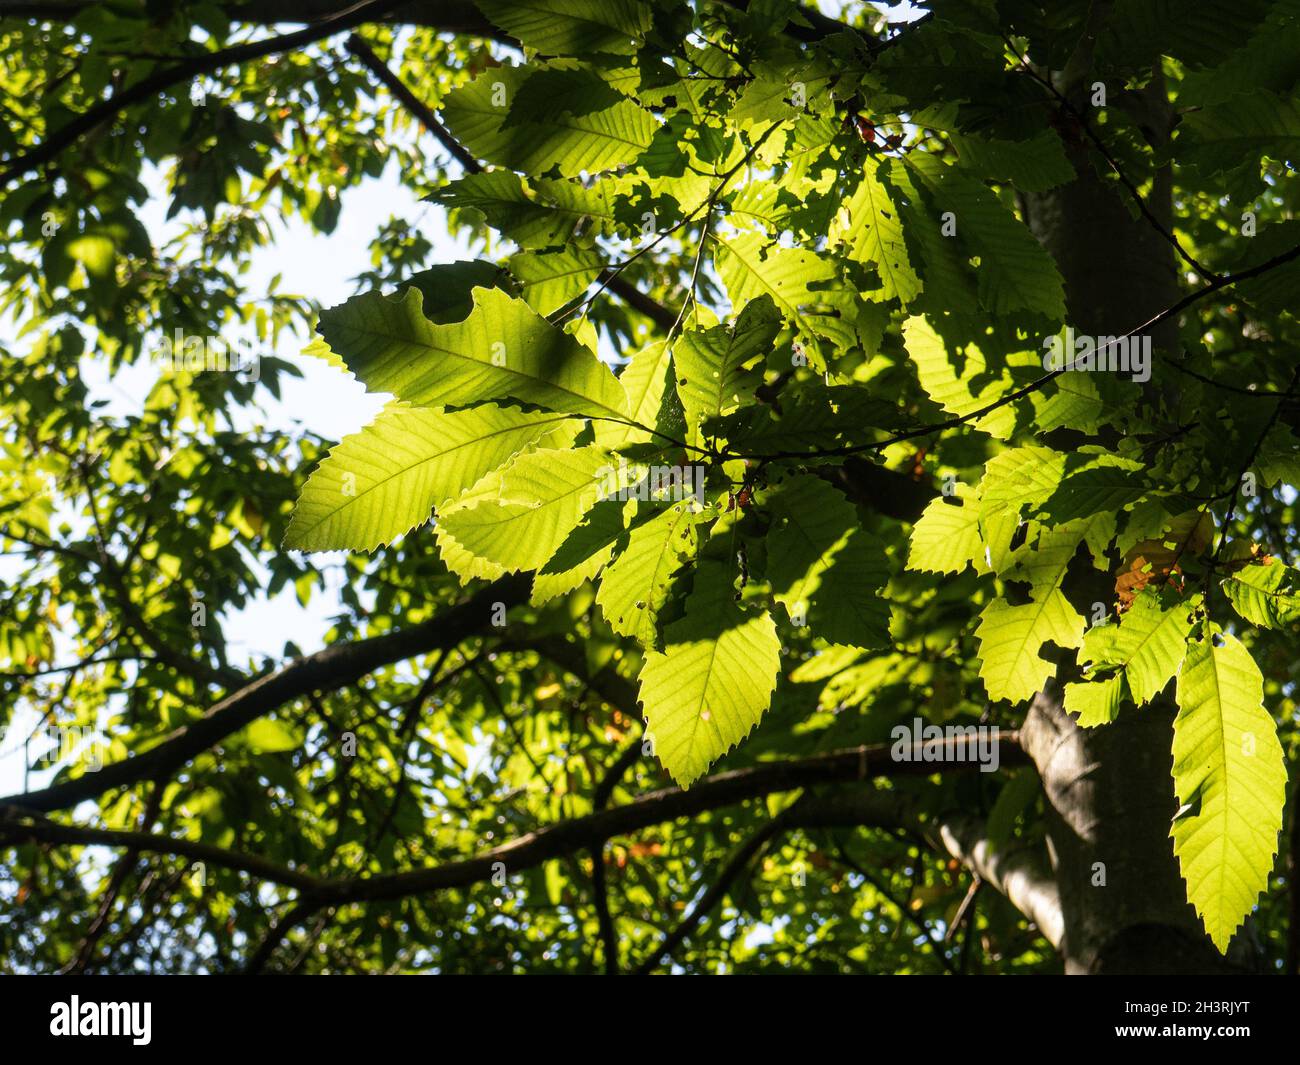 Lumière du soleil qui brille par le vert frais doux leavesmaking des motifs de lumière et d'ombre Banque D'Images